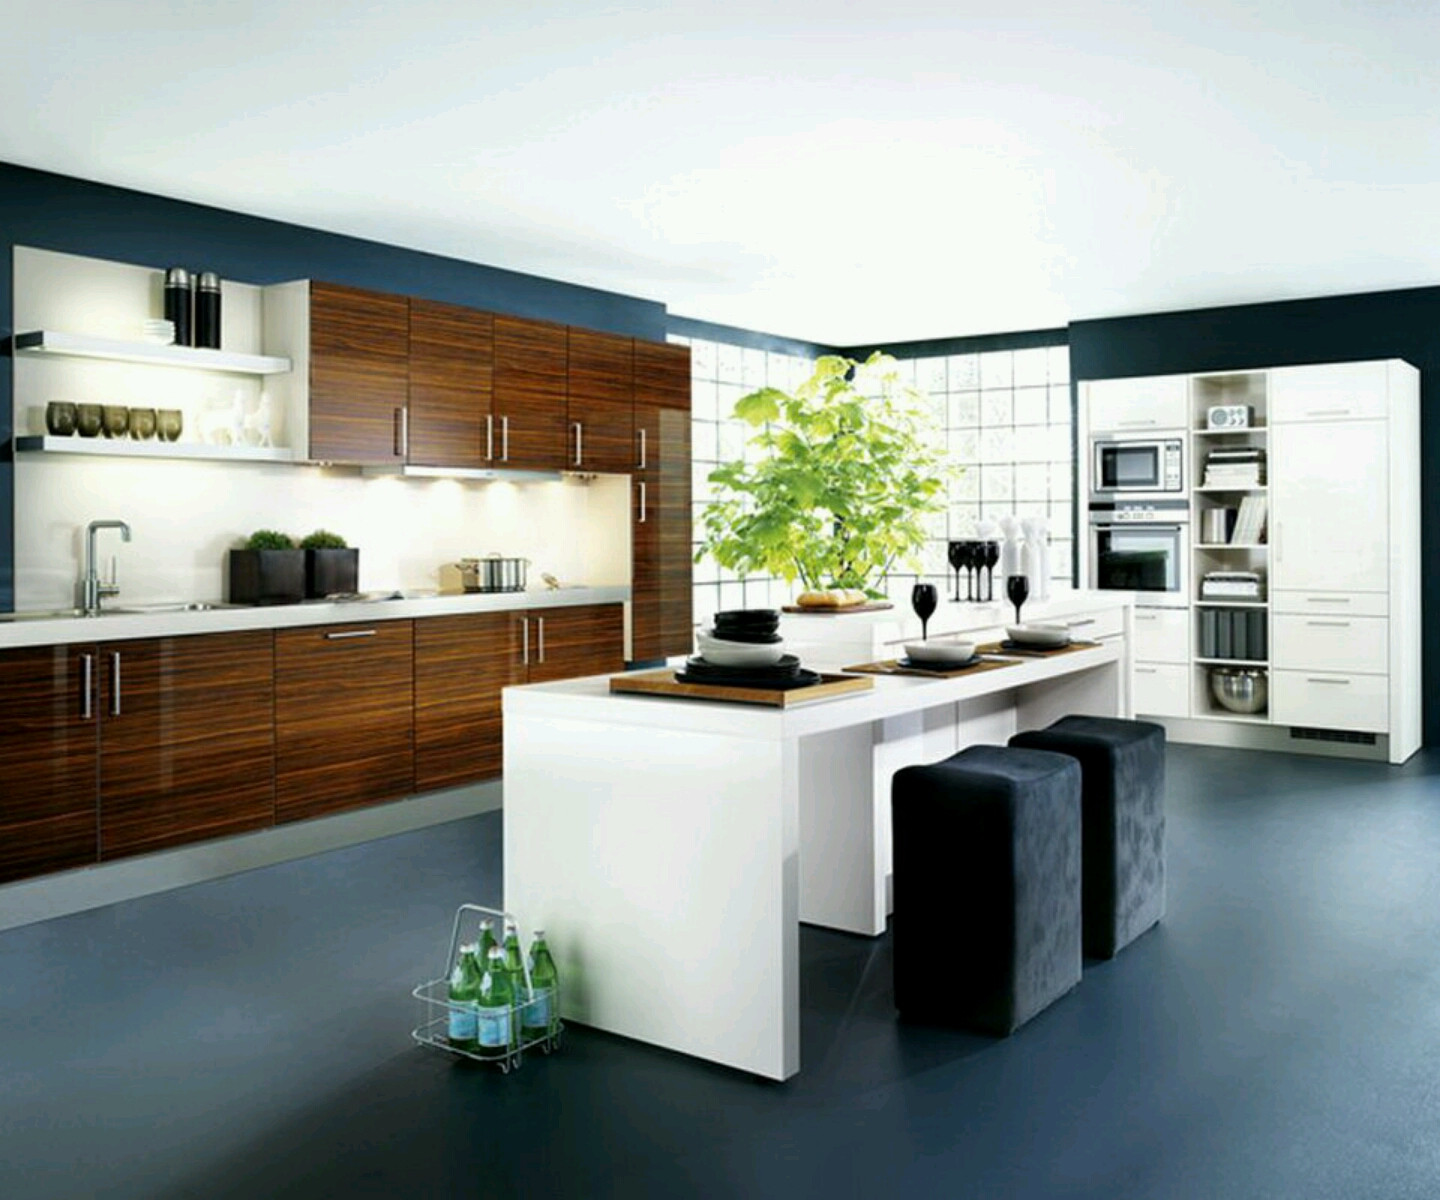 Modern Kitchen Cabinet Design Photos
 New home designs latest Kitchen cabinets designs modern